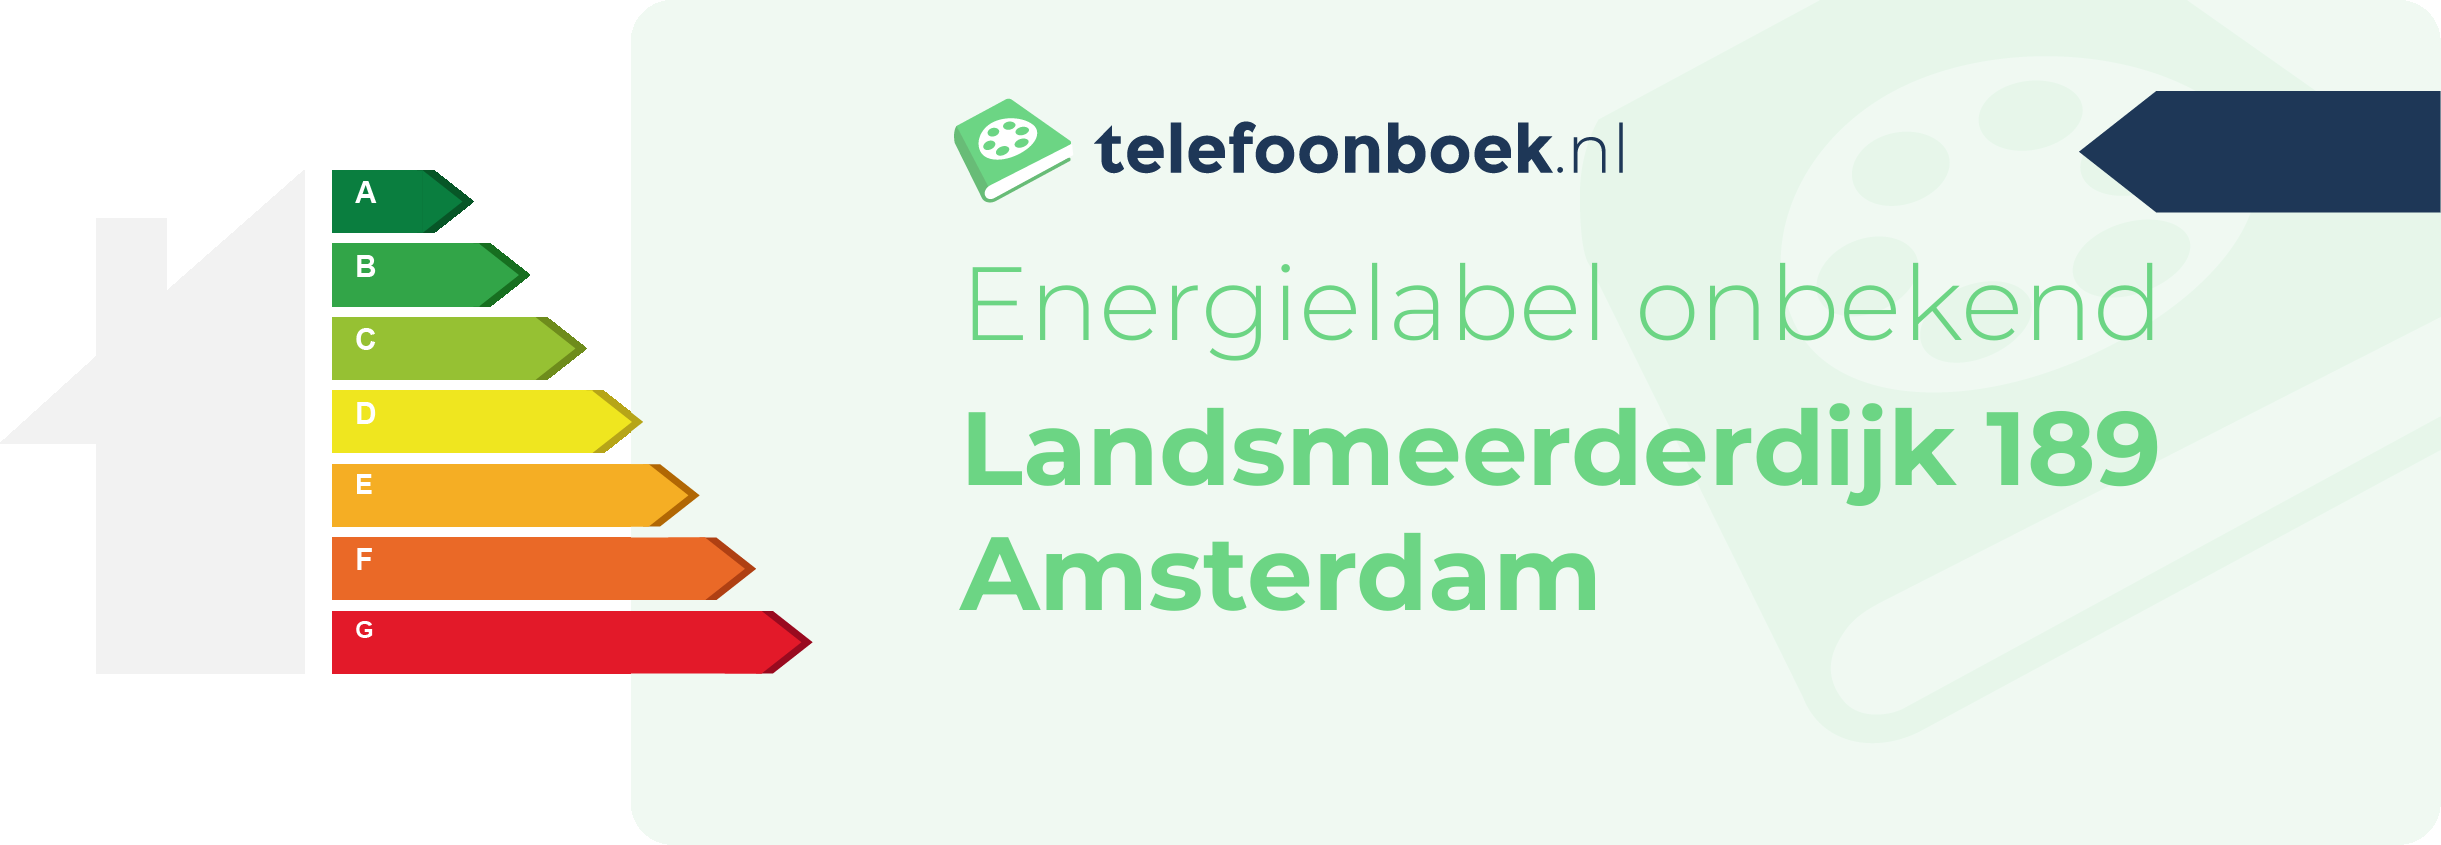 Energielabel Landsmeerderdijk 189 Amsterdam